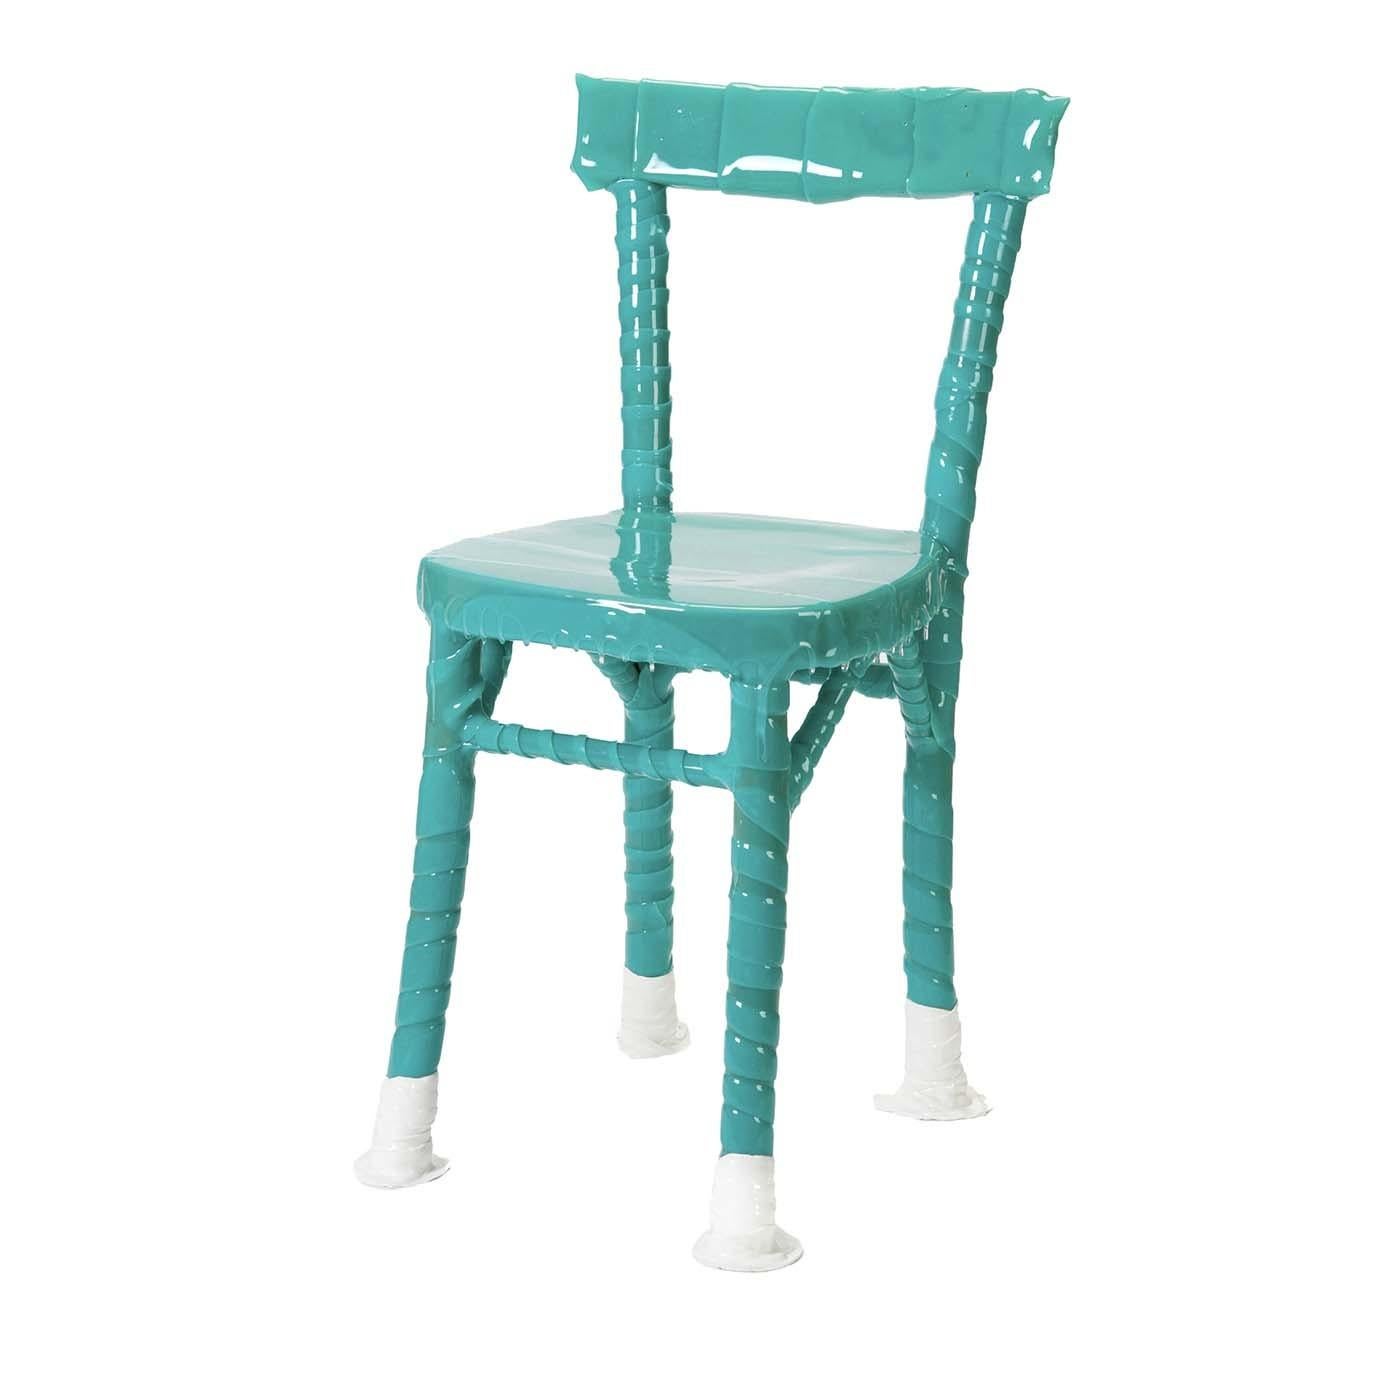 Die One-Off-Kollektion ist Teil des Upcycling-Projekts: vergessene Stühle, die ignoriert wurden oder irgendwo herumlagen, werden wiederentdeckt, nachdem sie von erfahrenen Kunsthandwerkern in Harzbandagen gehüllt wurden. Jeder Stuhl ist etwas ganz